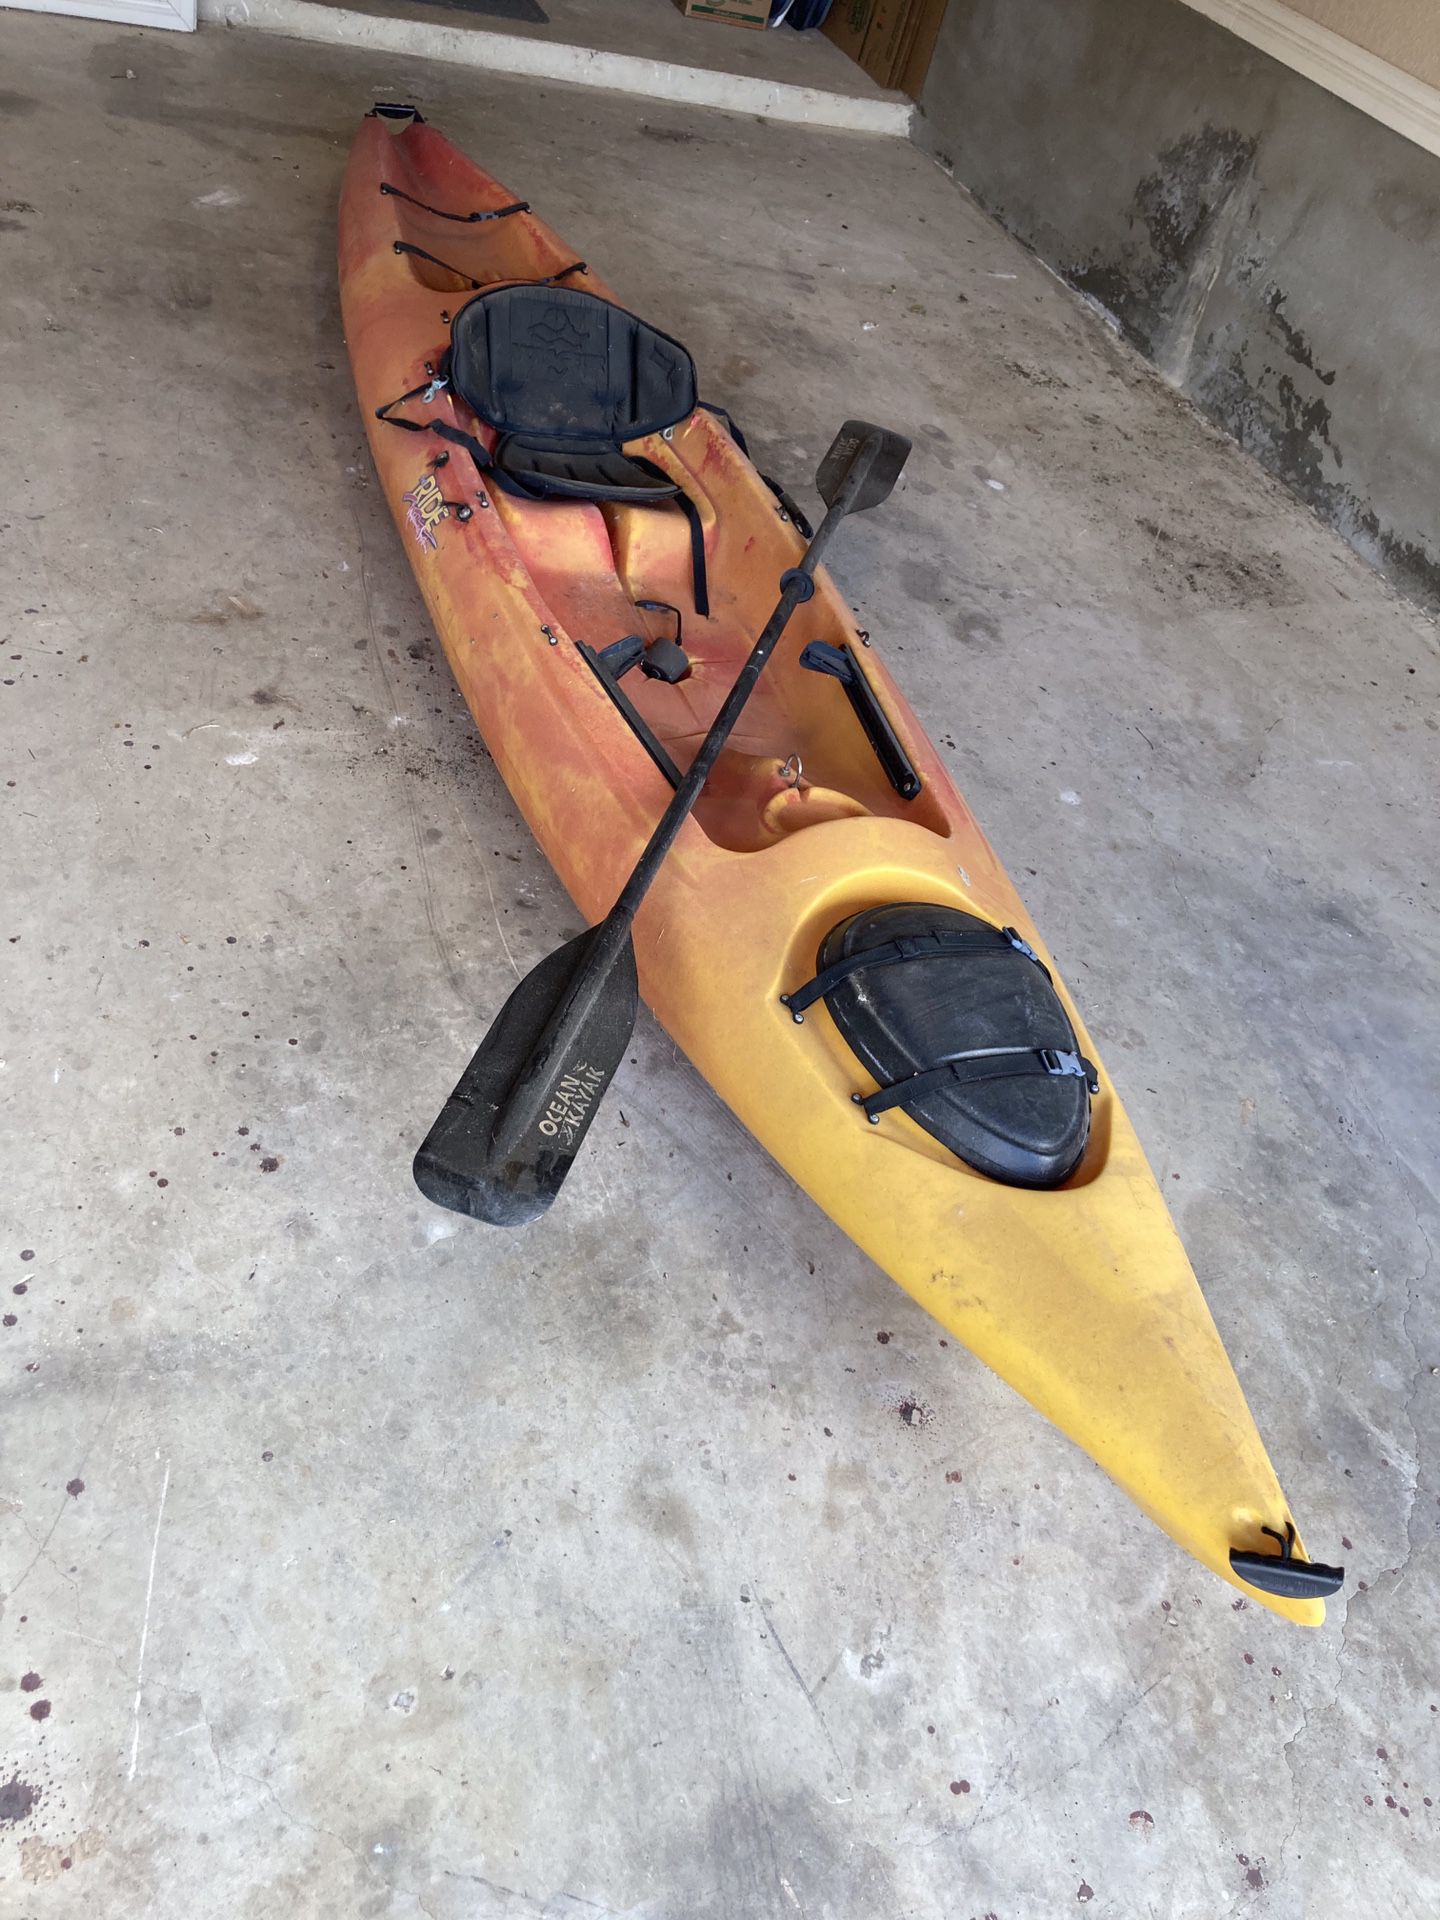 Kayak for sale $500 OBO 